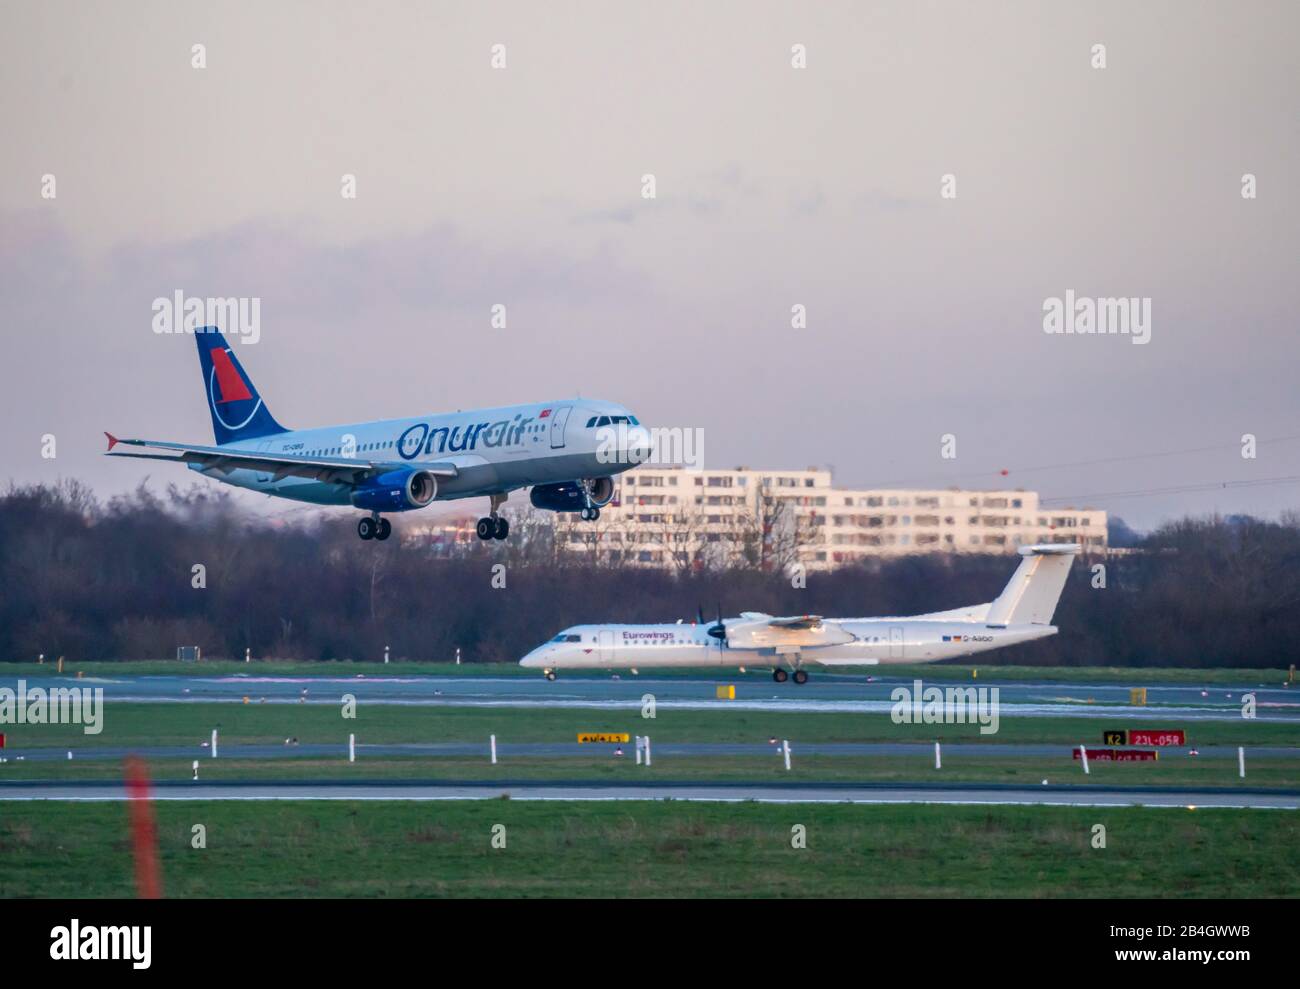 Aeropuerto Internacional de DŸsseldorf, DUS, avión en aterrizaje, Onur Air, Airbus A320-233, Eurowings, de Havilland Canada Dash 8-400, Foto de stock